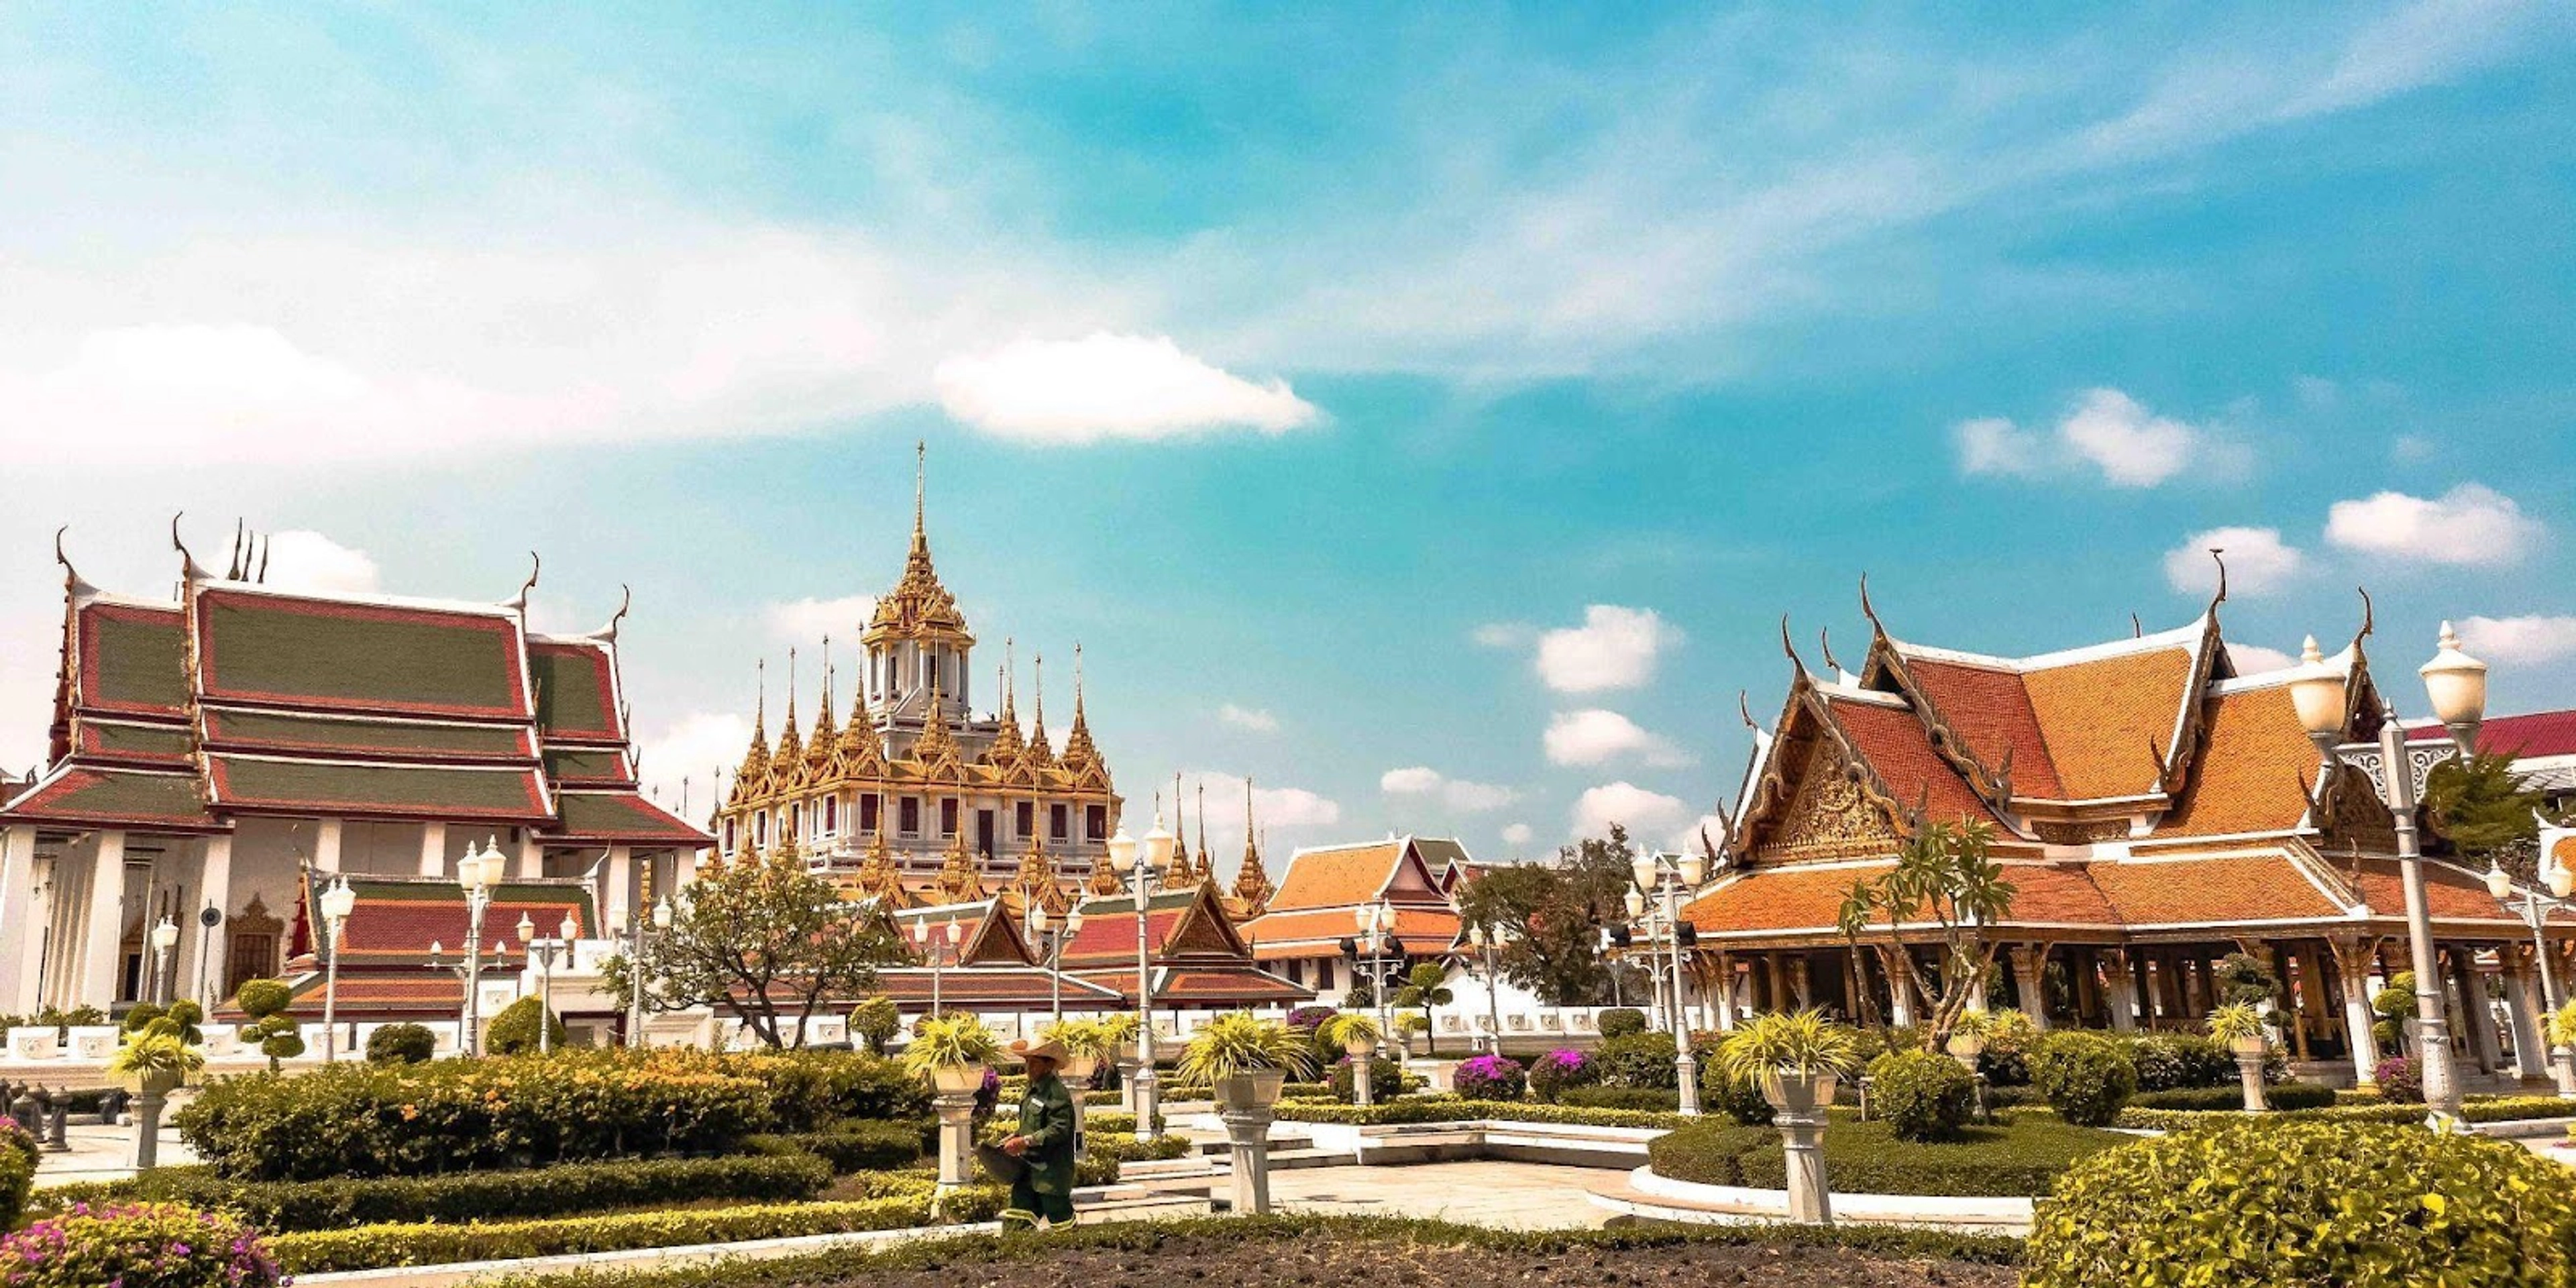 Bhubing Palace, cung điện hoàng gia của Thái Lan tọa lạc tại đỉnh núi Doi Buak Ha ở tỉnh Chiang Mai